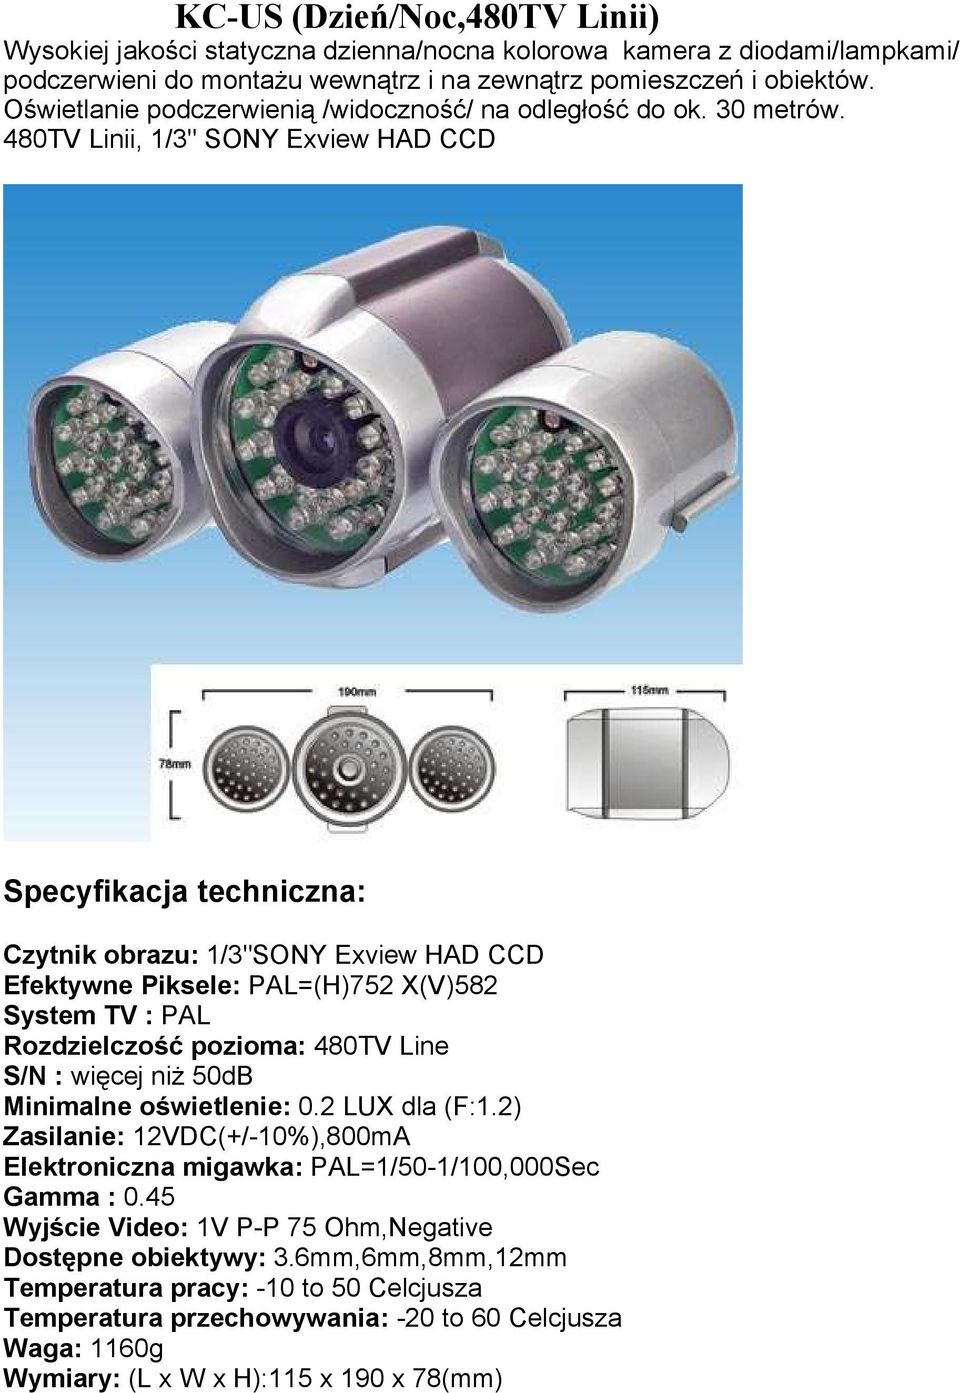 480TV Linii, 1/3" SONY Exview HAD CCD Specyfikacja techniczna: Czytnik obrazu: 1/3"SONY Exview HAD CCD Efektywne Piksele: PAL=(H)752 X(V)582 System TV : PAL Rozdzielczość pozioma: 480TV Line S/N :